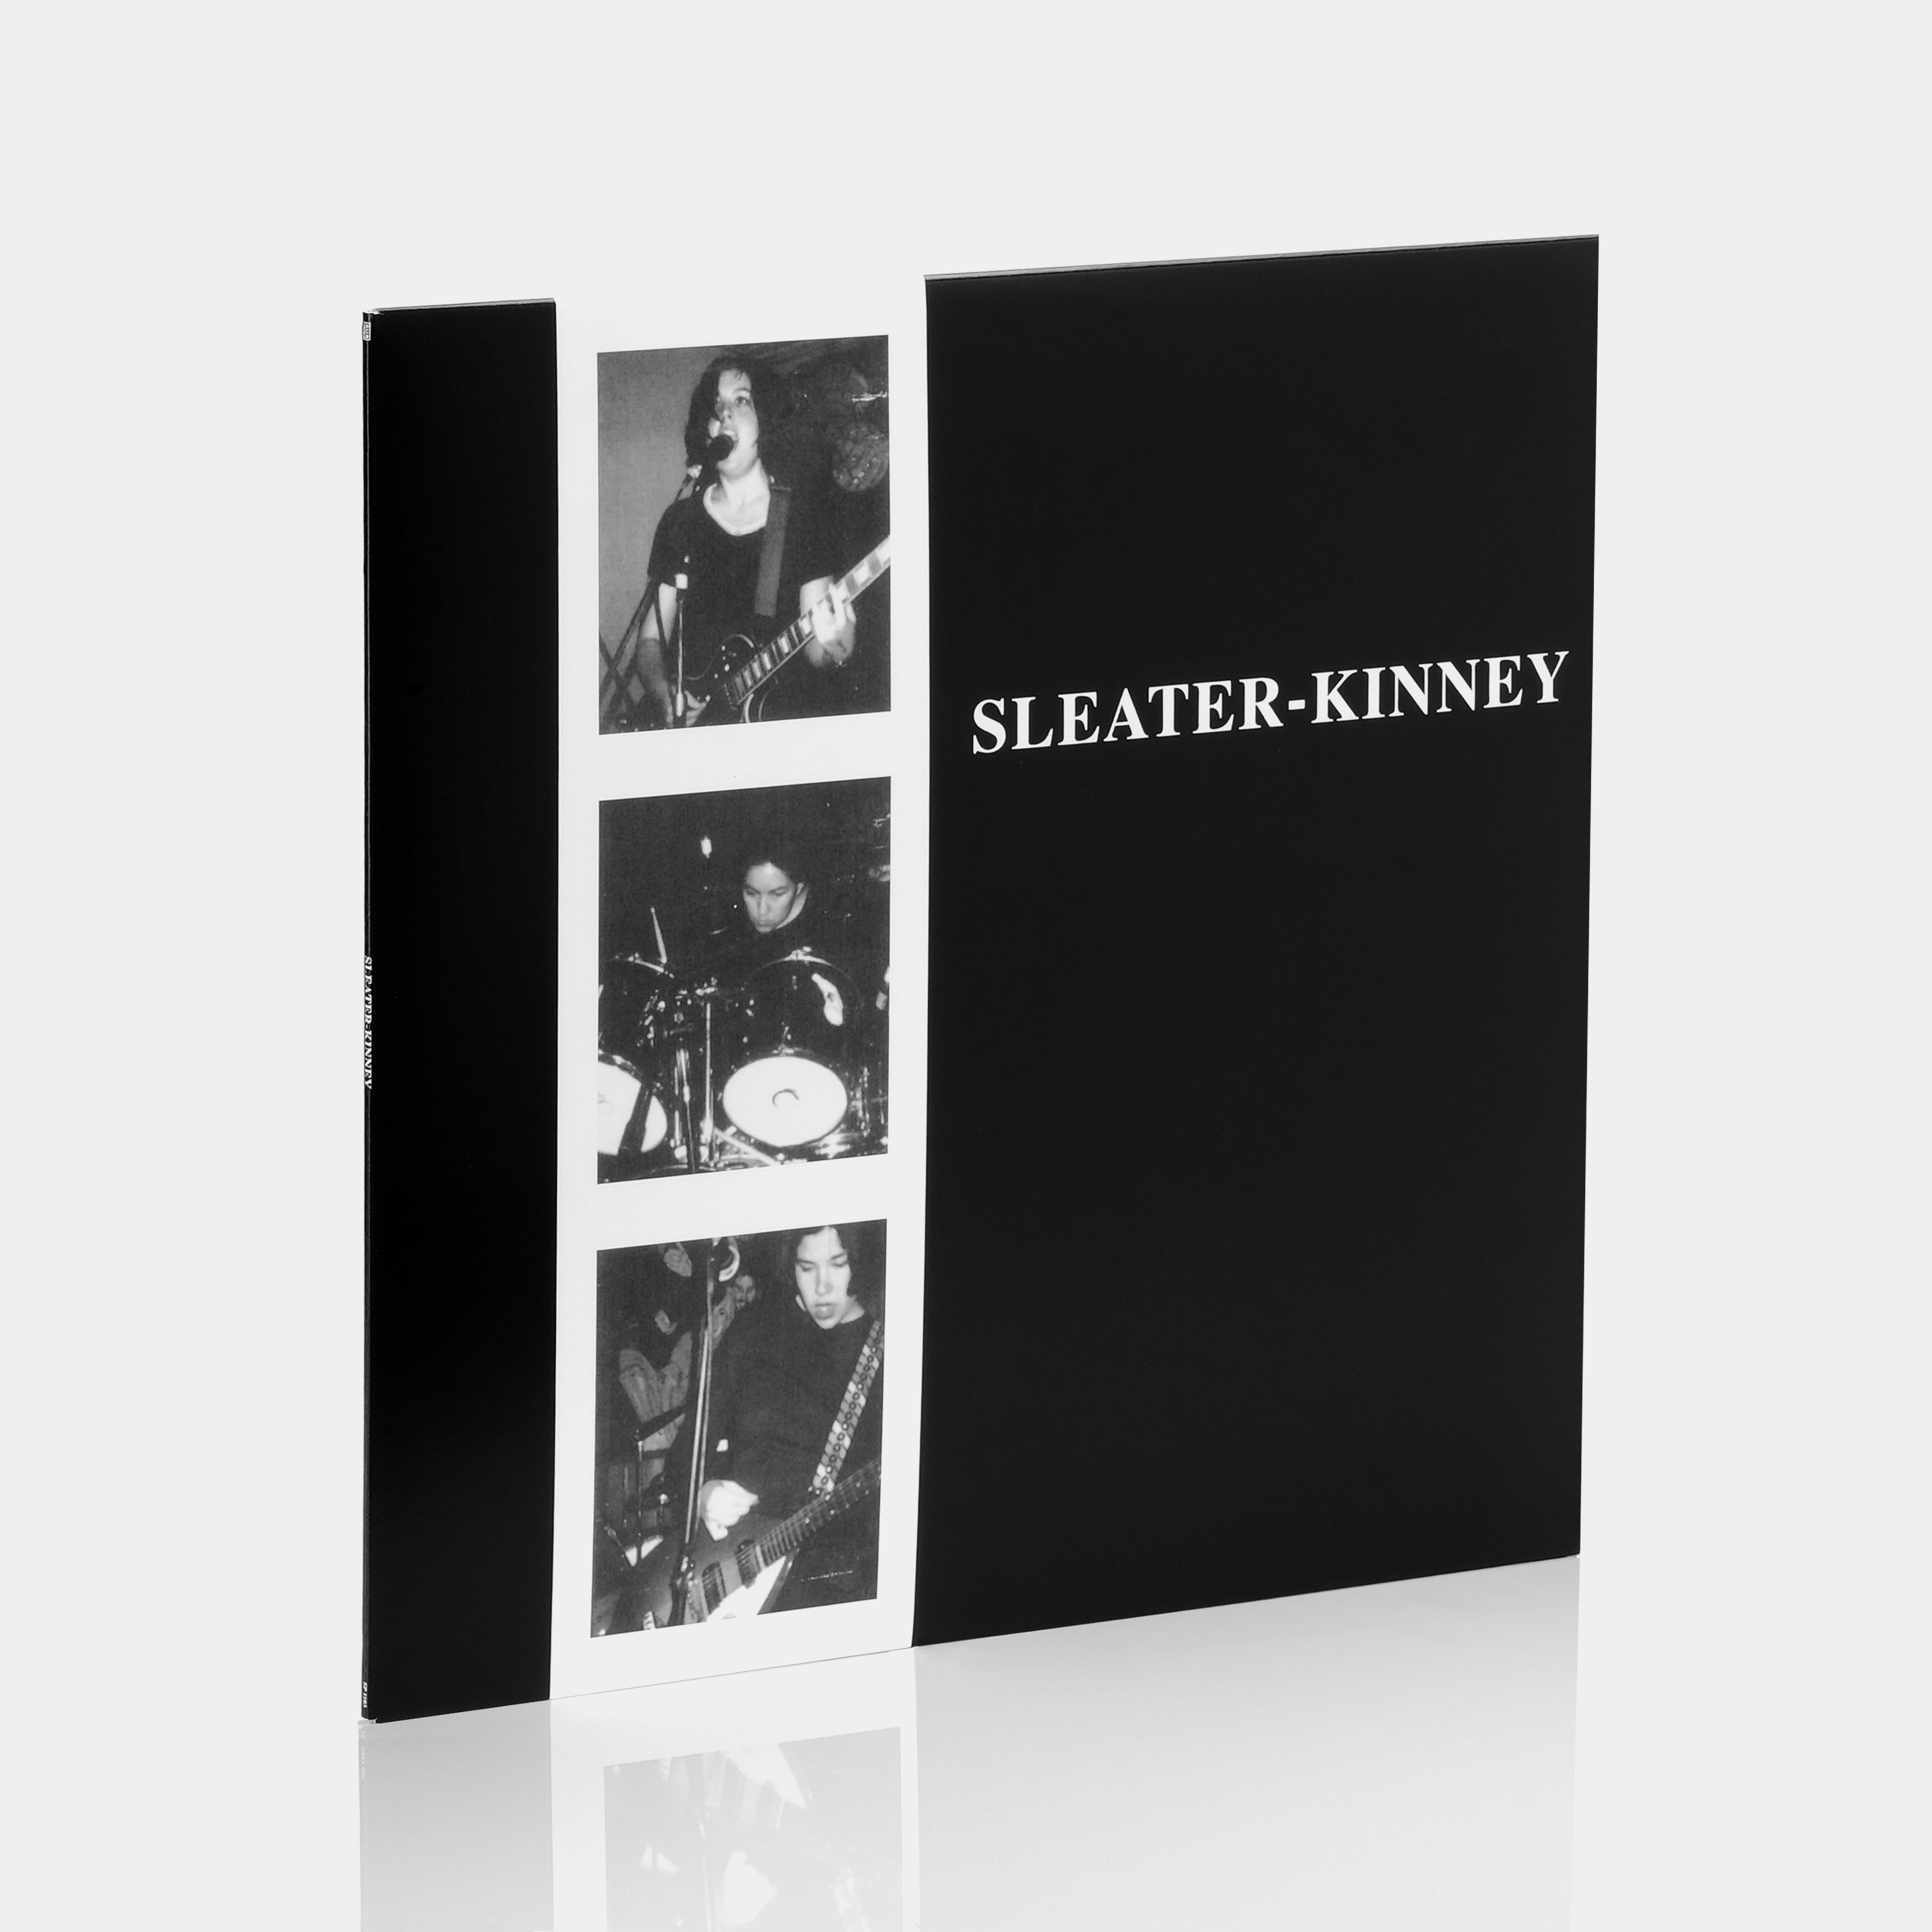 Sleater-Kinney - Sleater-Kinney LP Vinyl Record